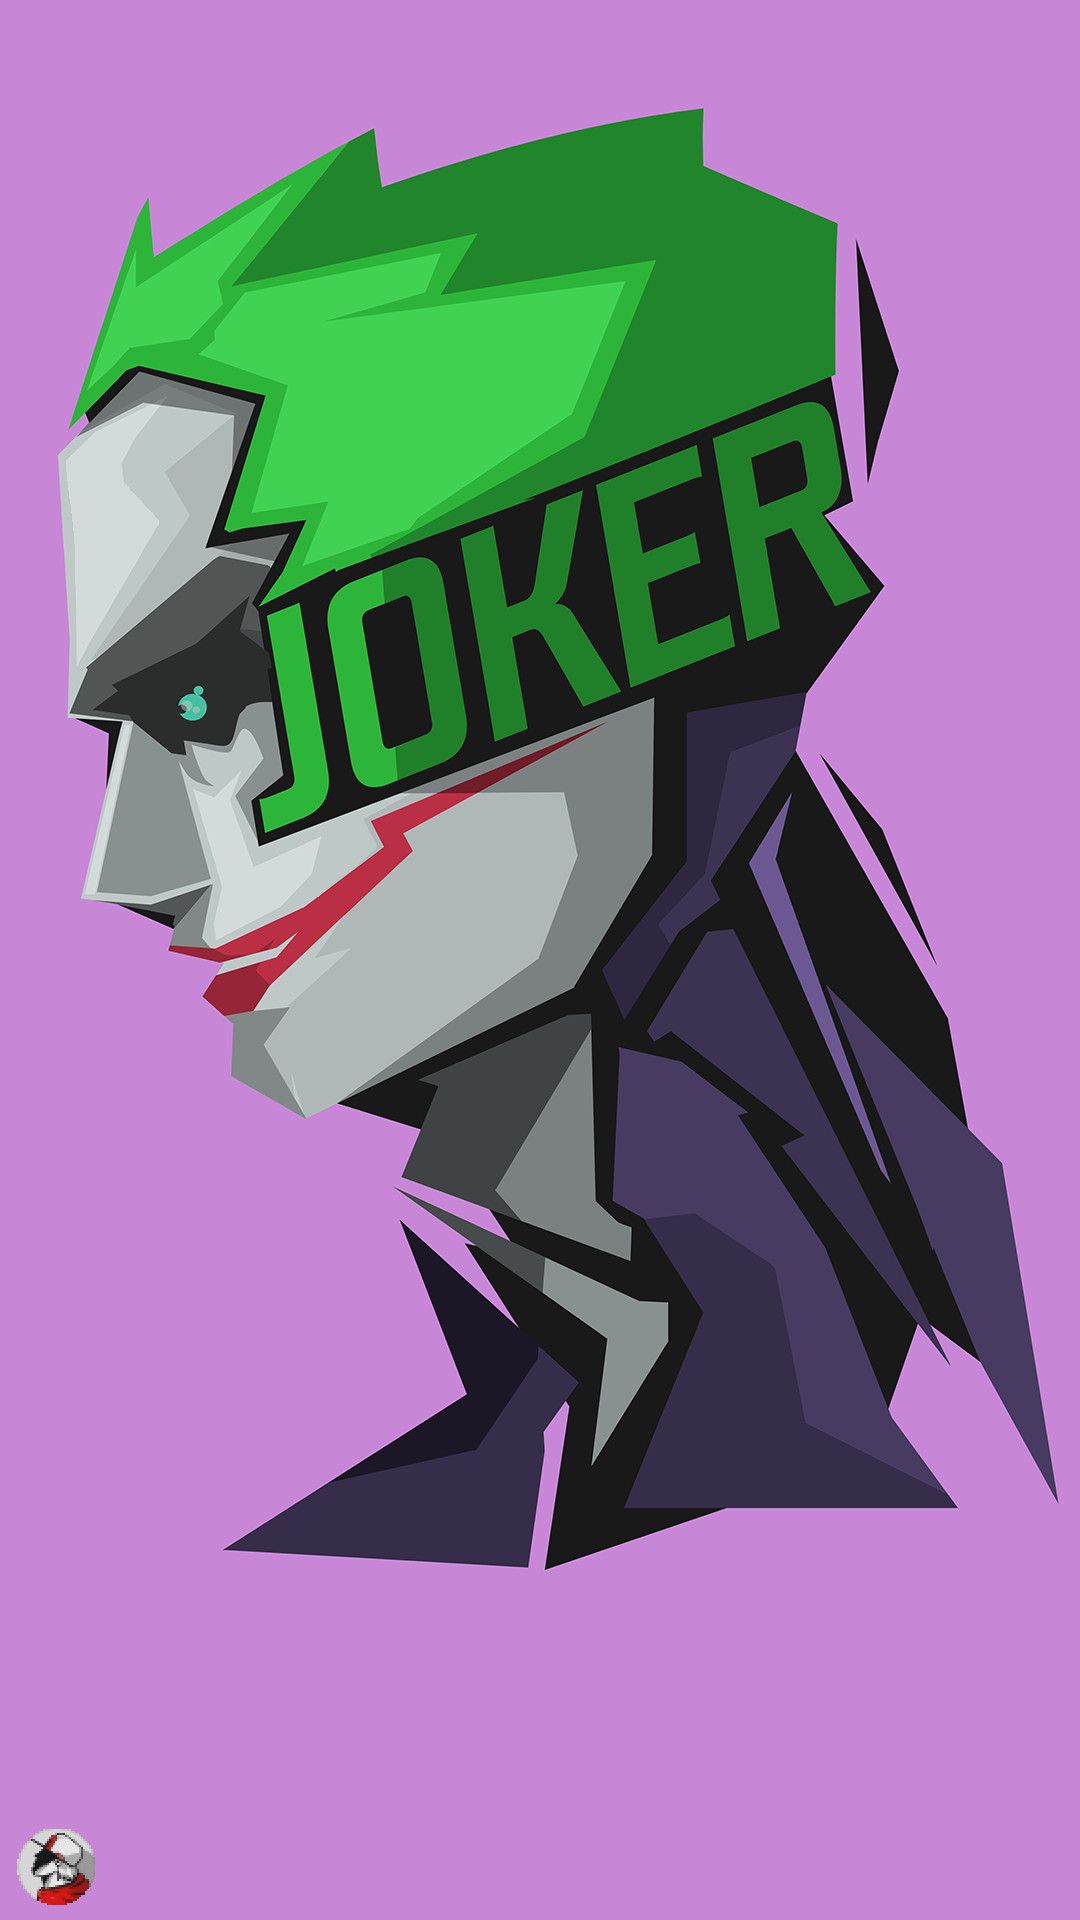 Joker Hd Wallpaper For Iphone Cartoon - 1080x1920 Wallpaper 